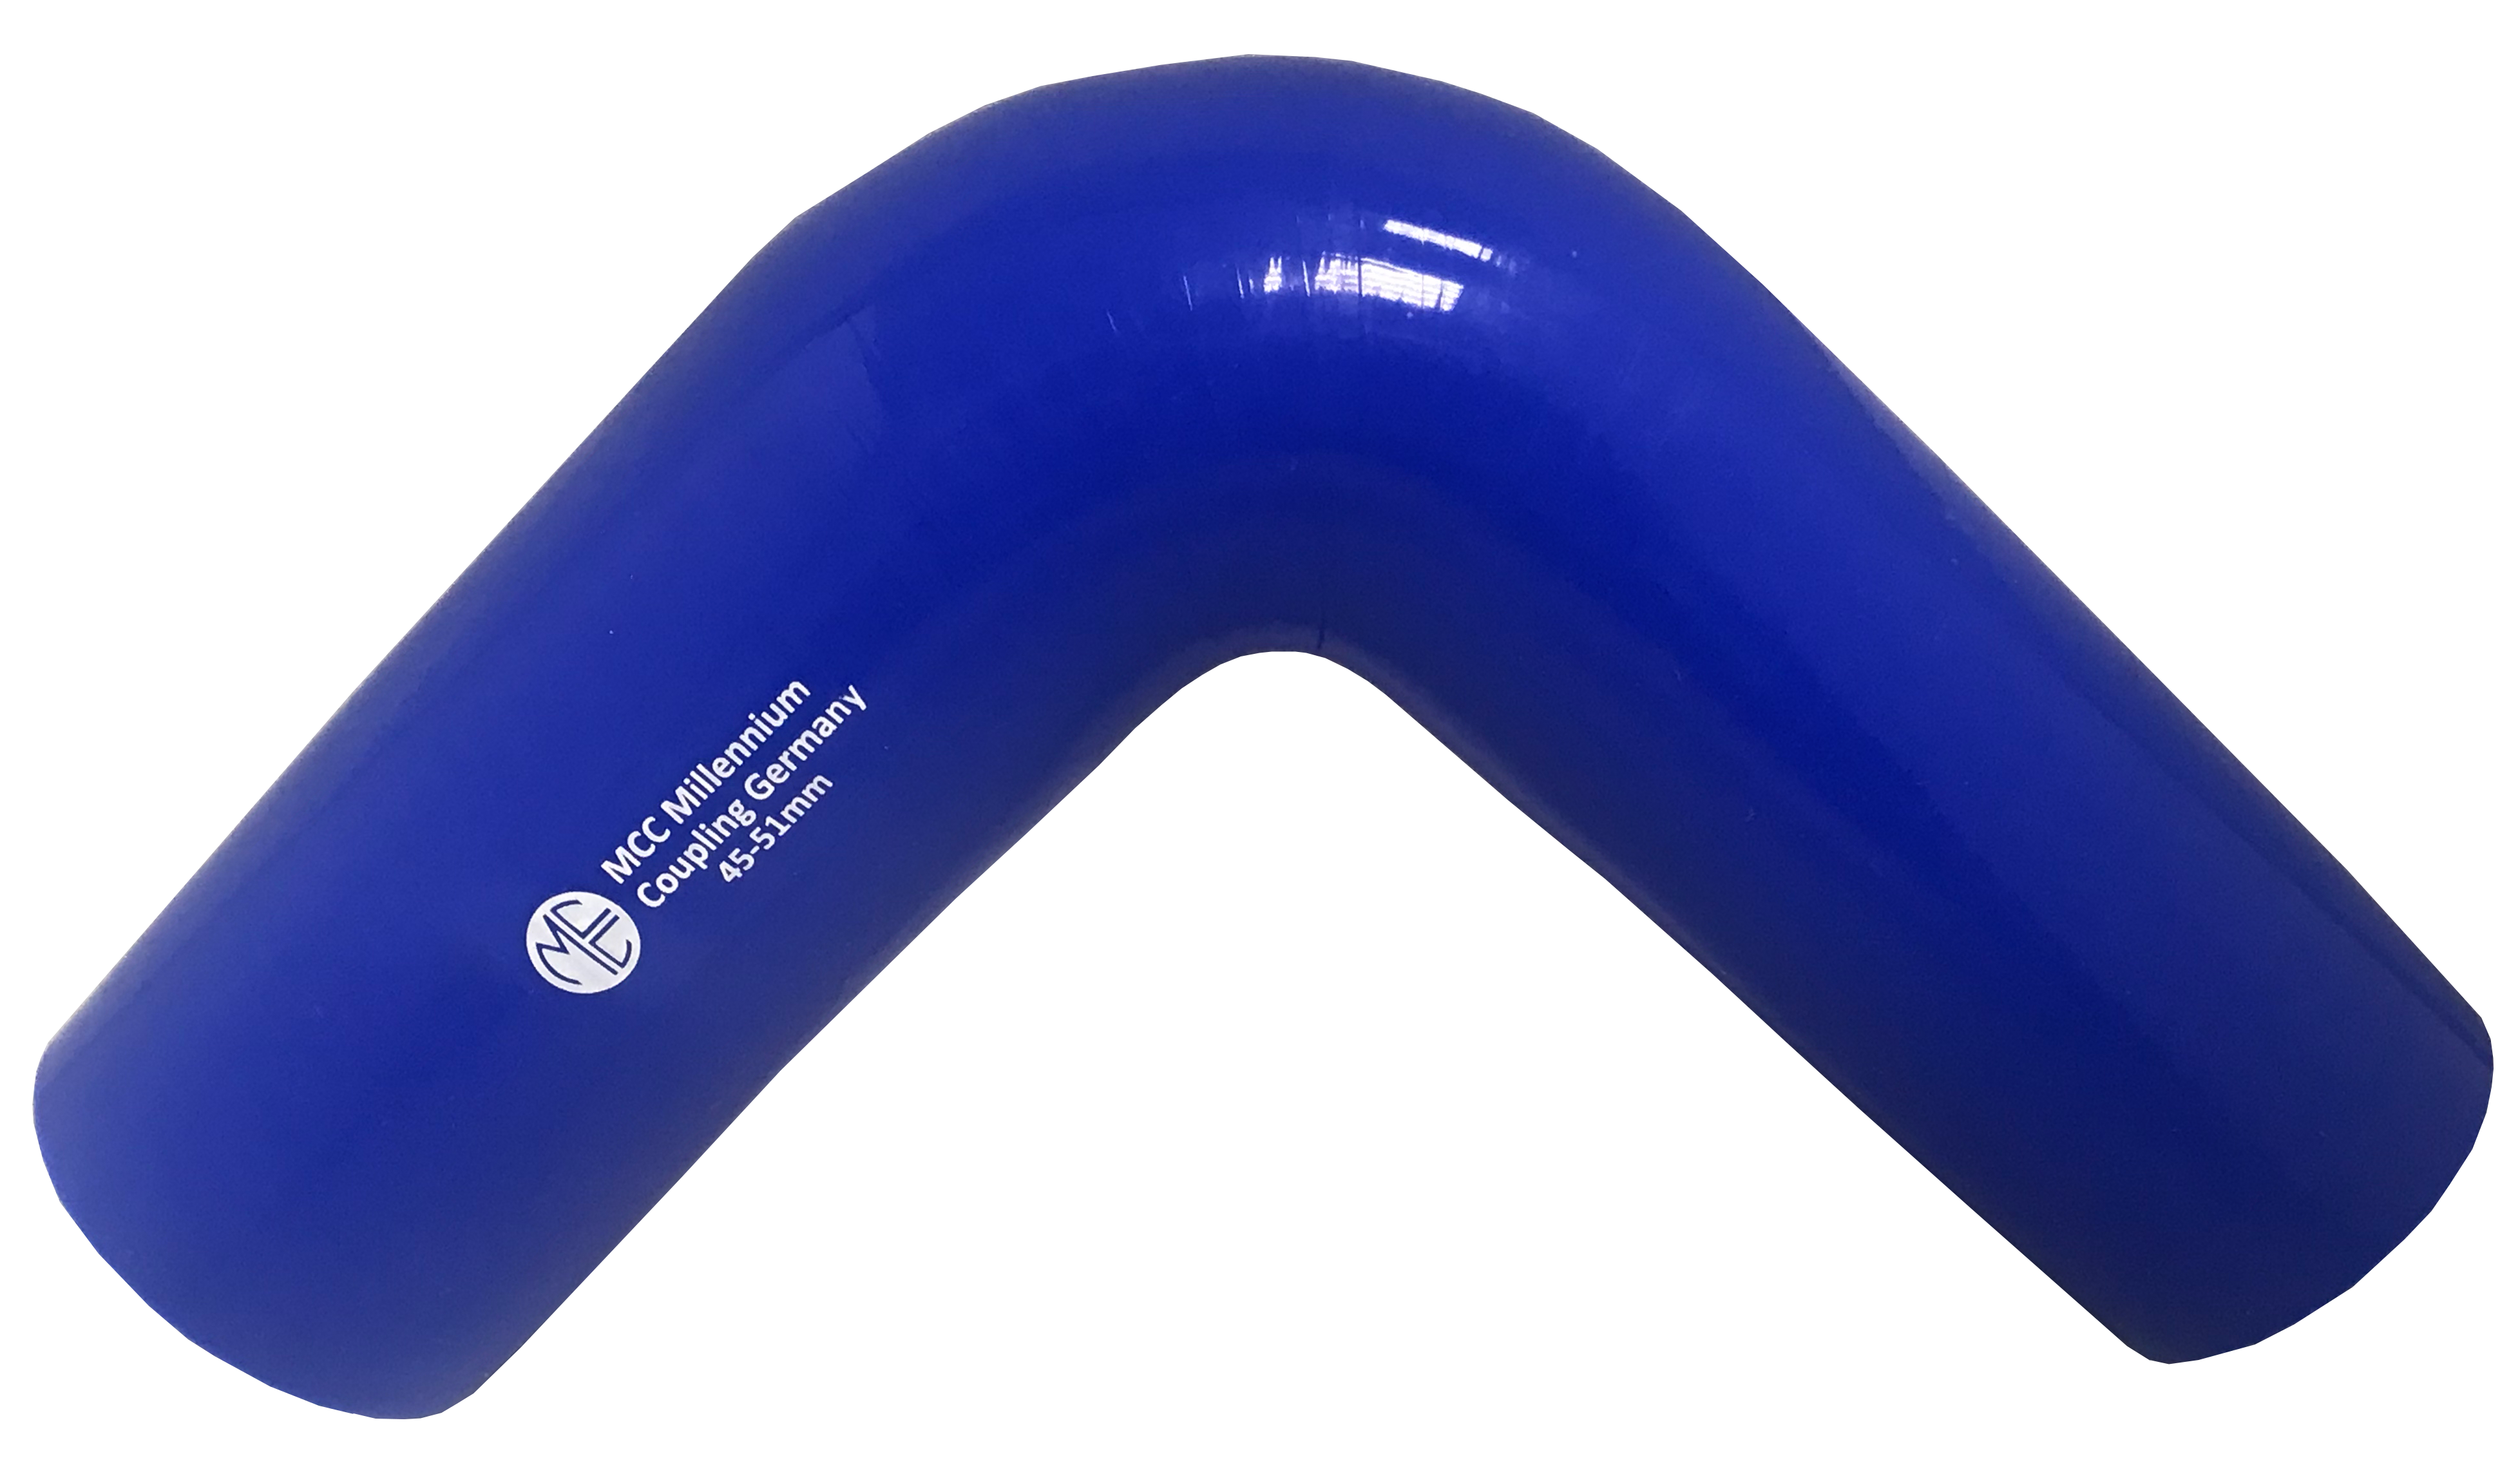 Blauer Silikon Kühlerschlauch mit einem Innendurchmesser von 8 mm und einer  Wandstärke von 4 mm. Fixlänge 100 cm.